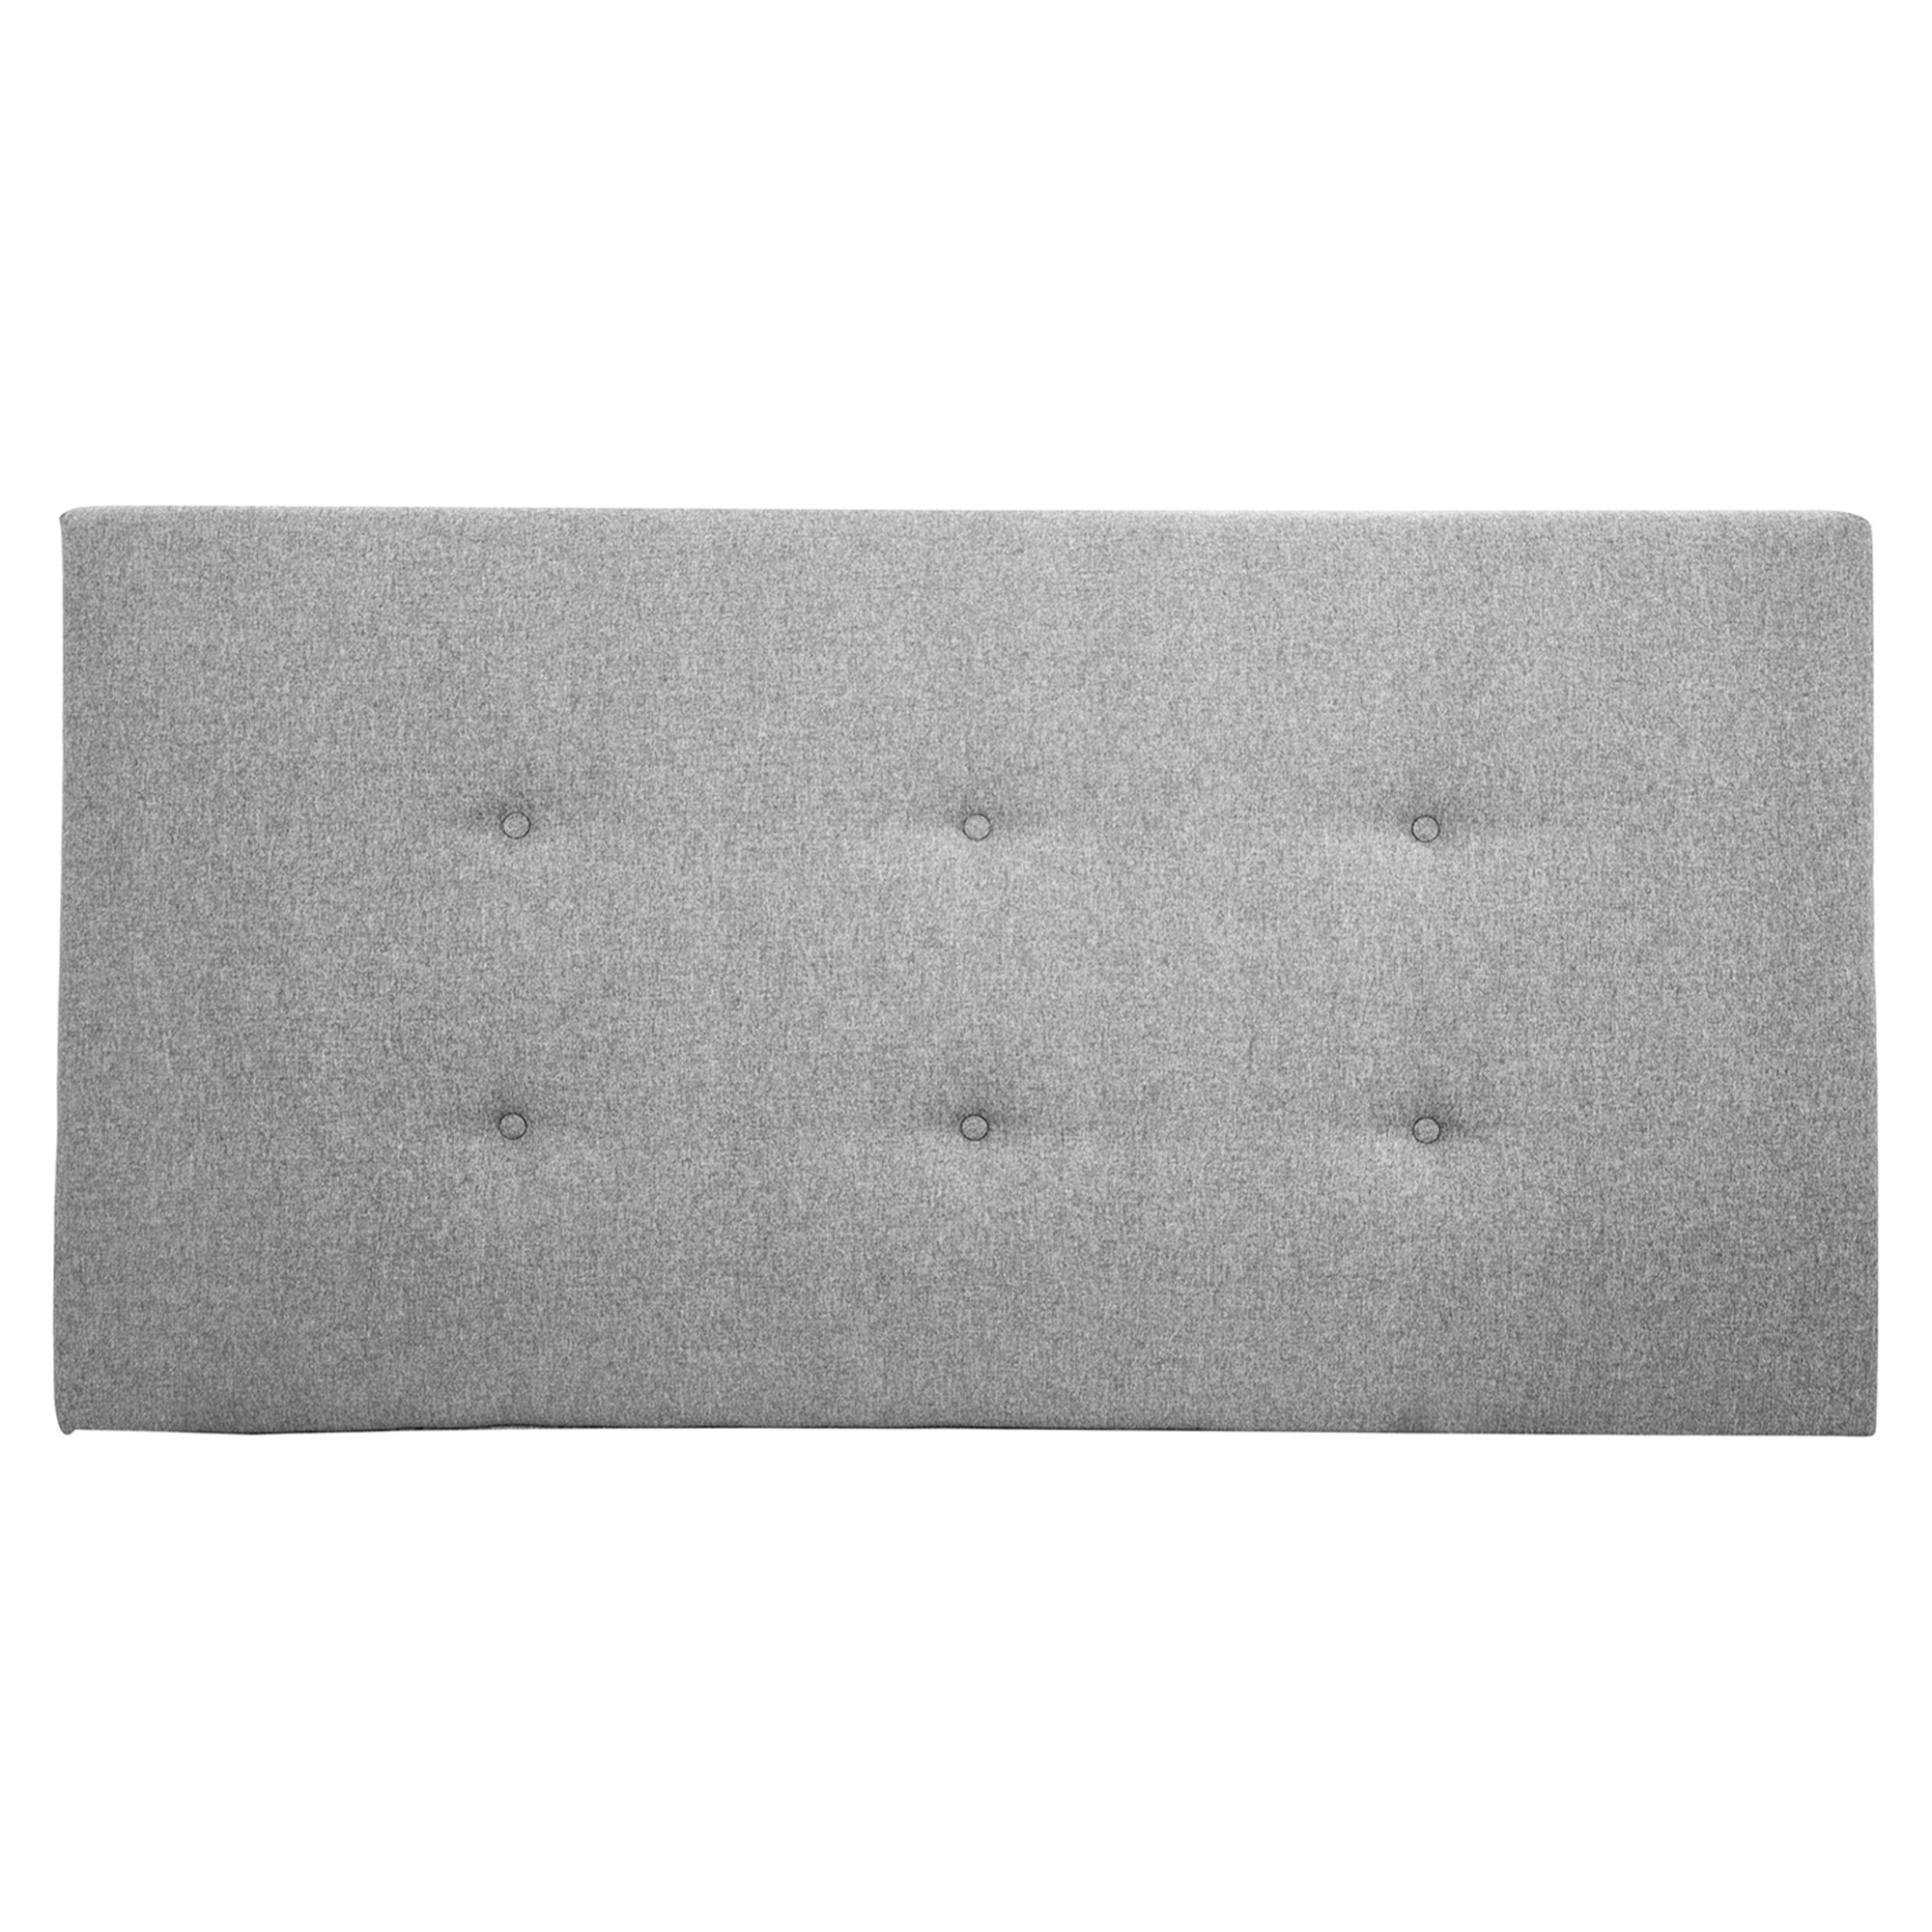 Tête de lit polyester couleur grise 200x80cm